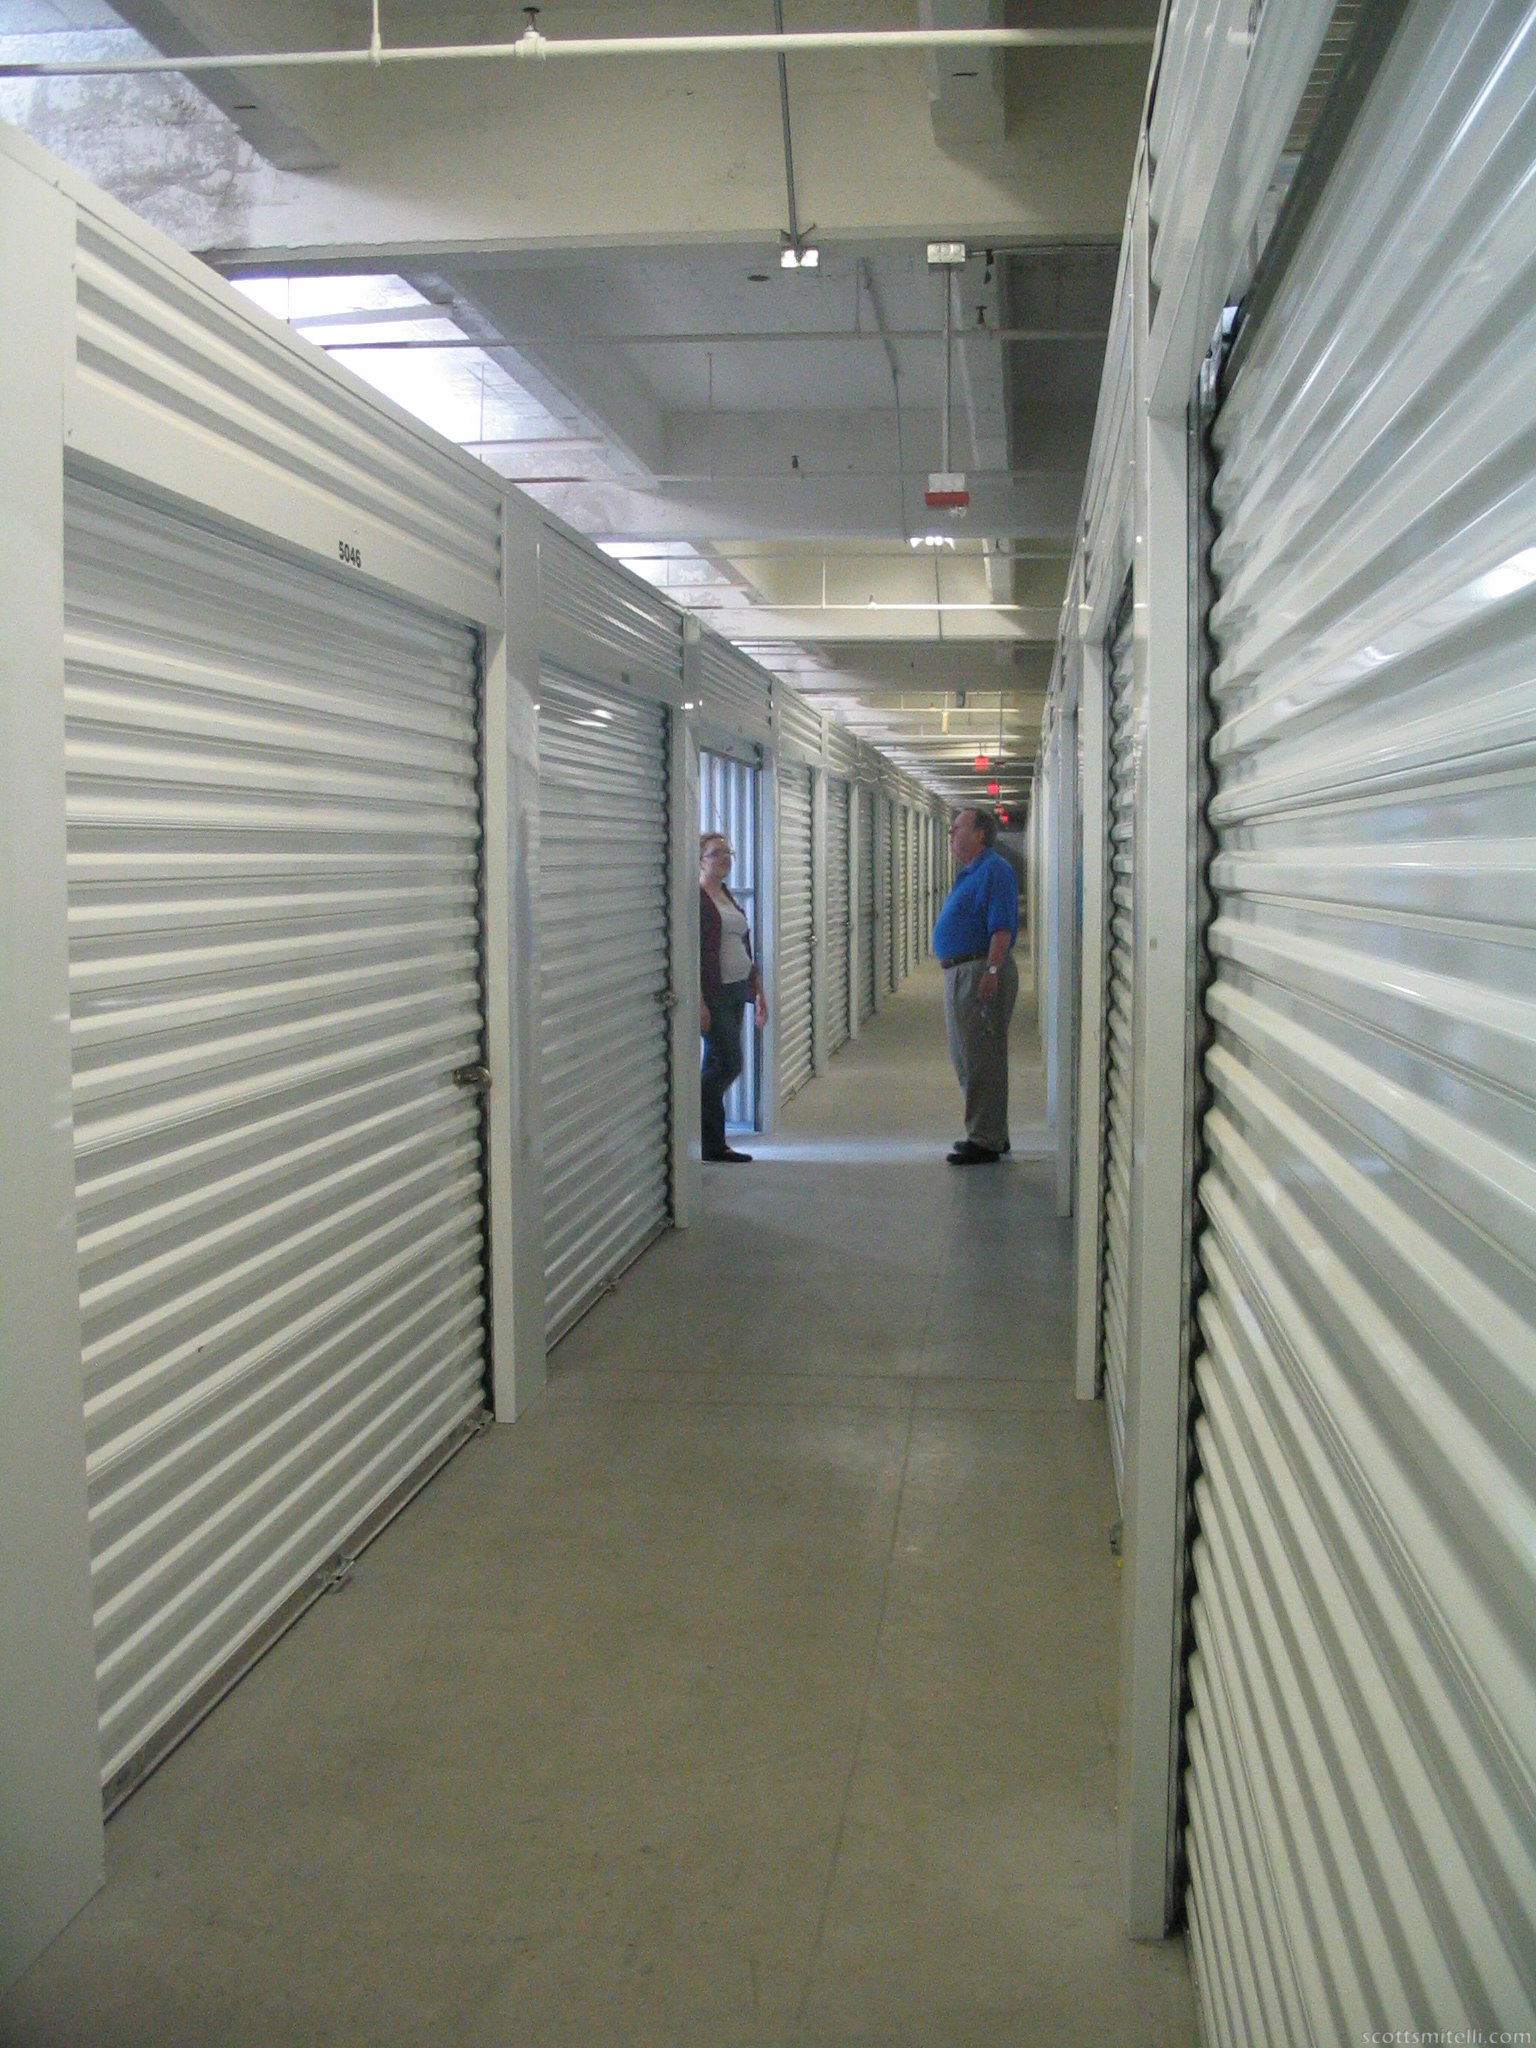 Storage Hallways